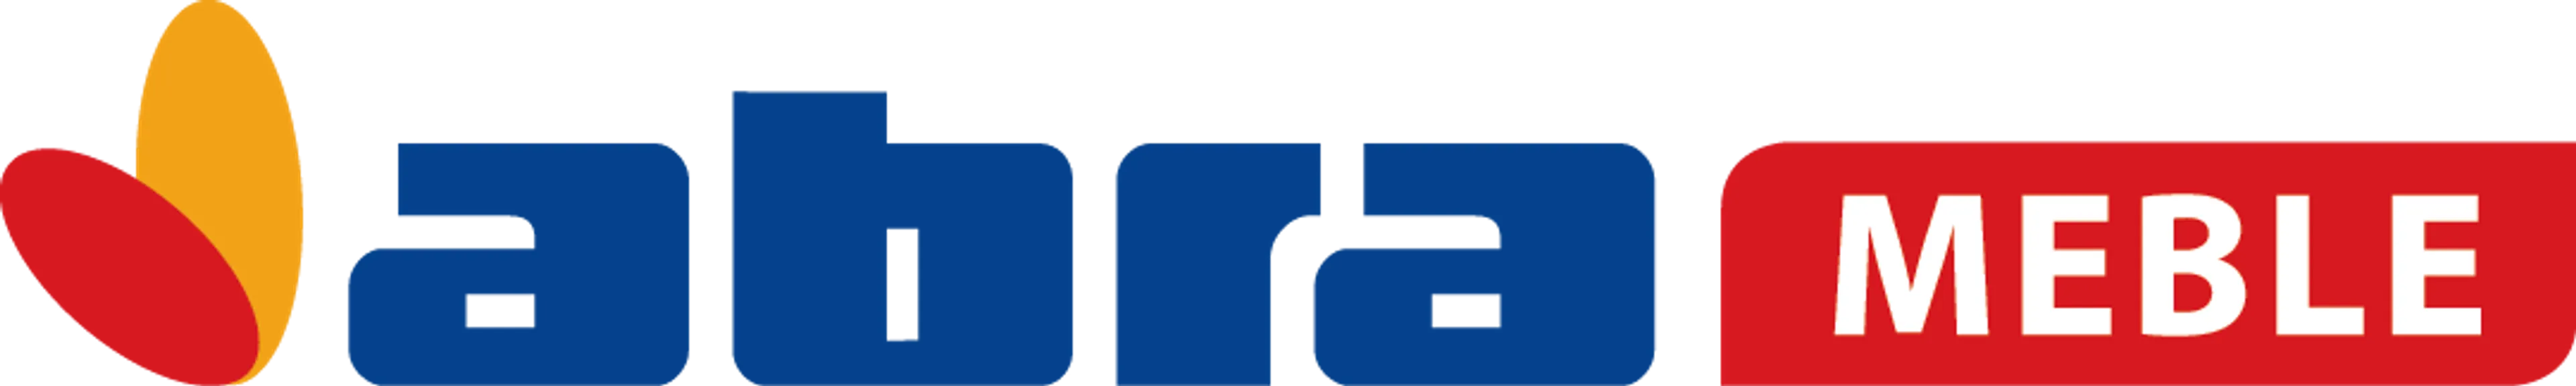 ABRA logo